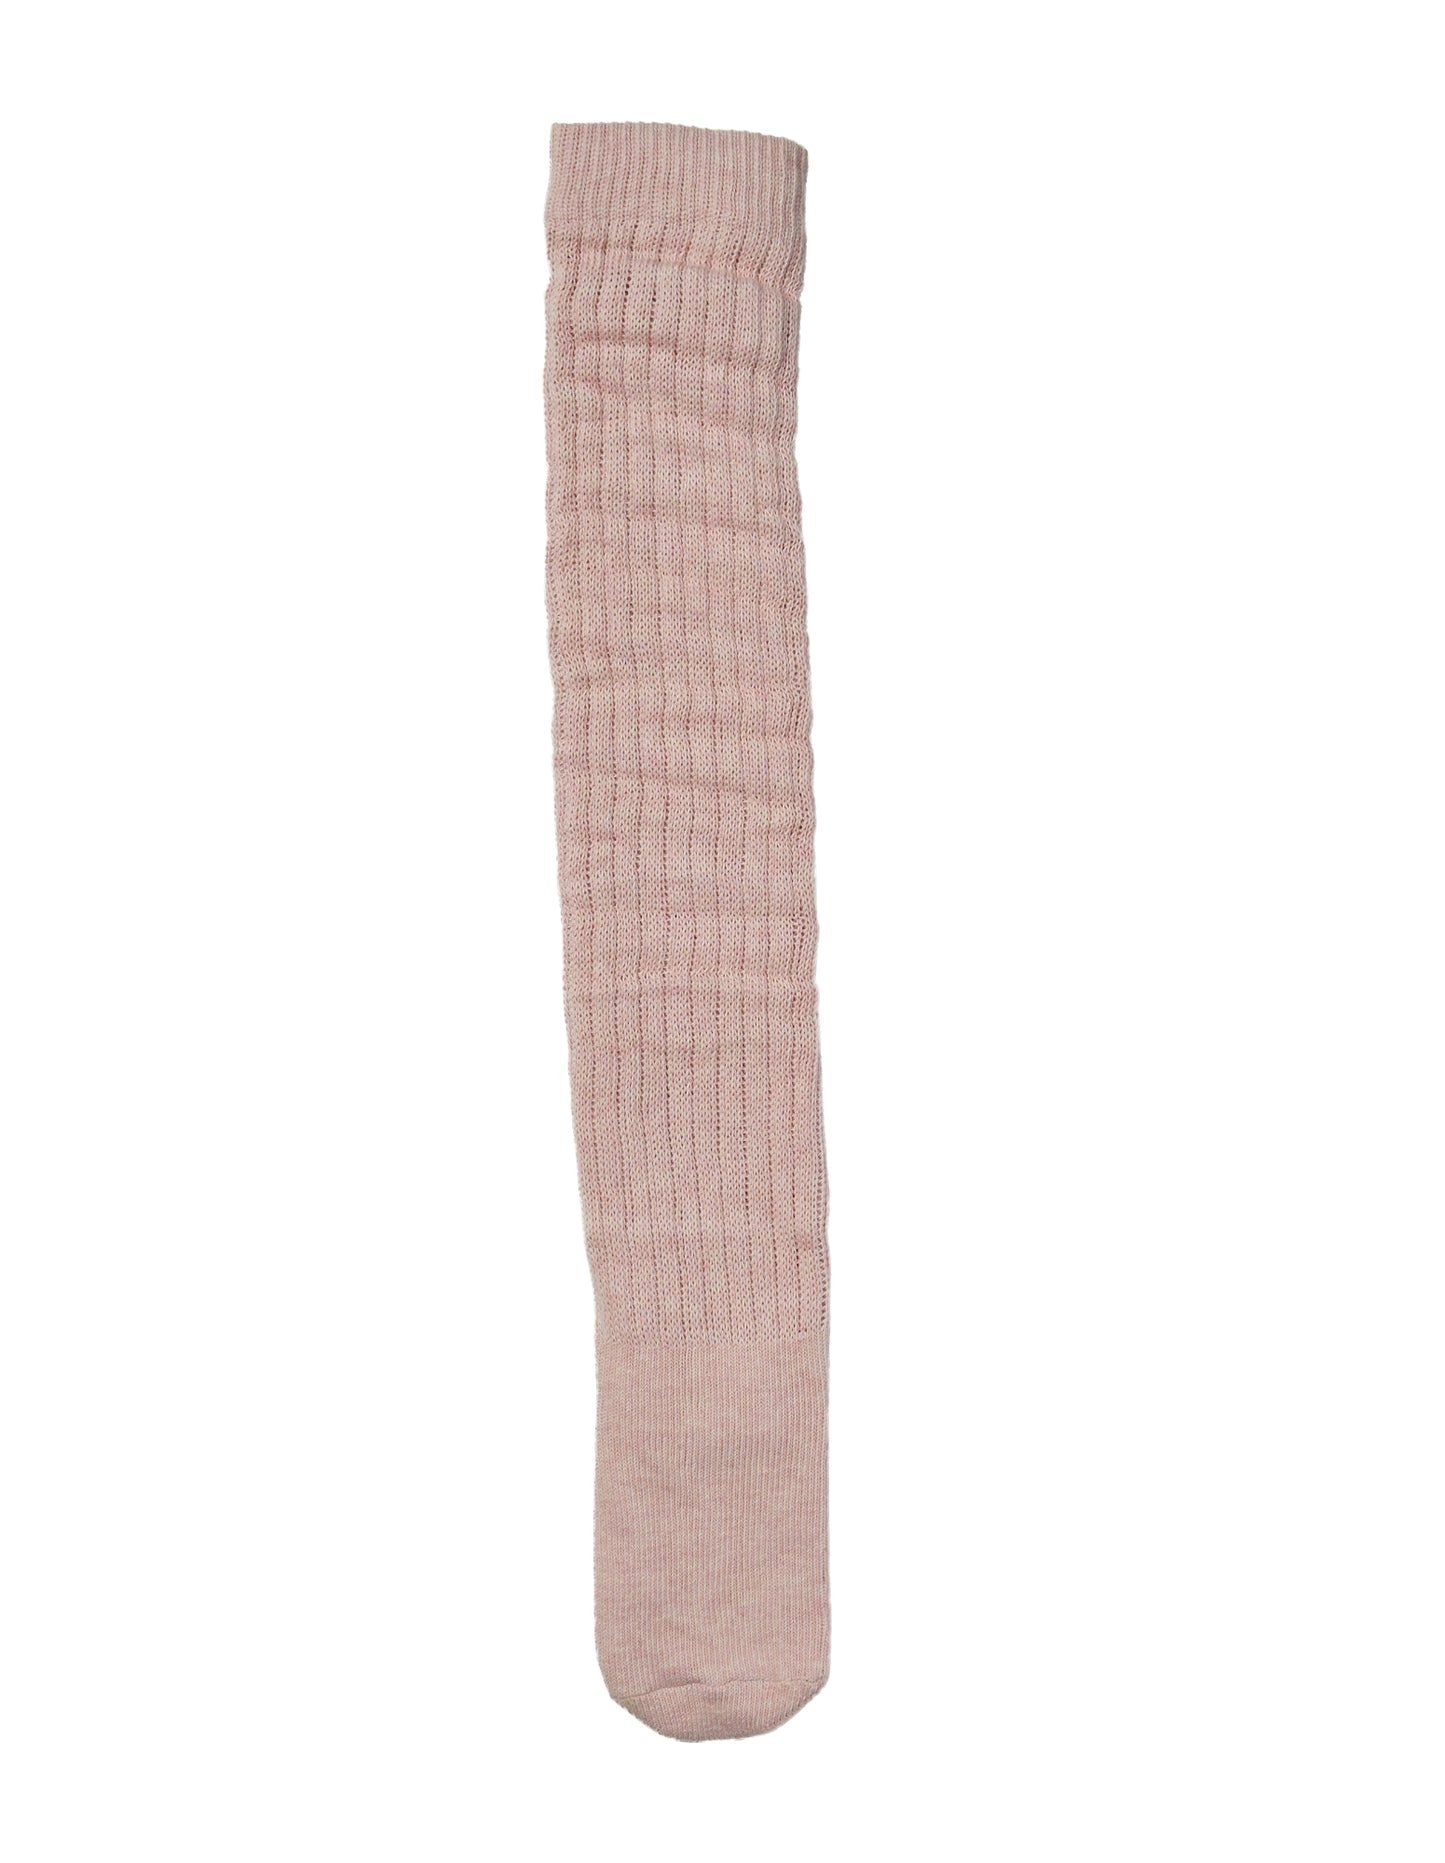 Full length of Simon de Winter Women's Slouch Socks in Pink Marle